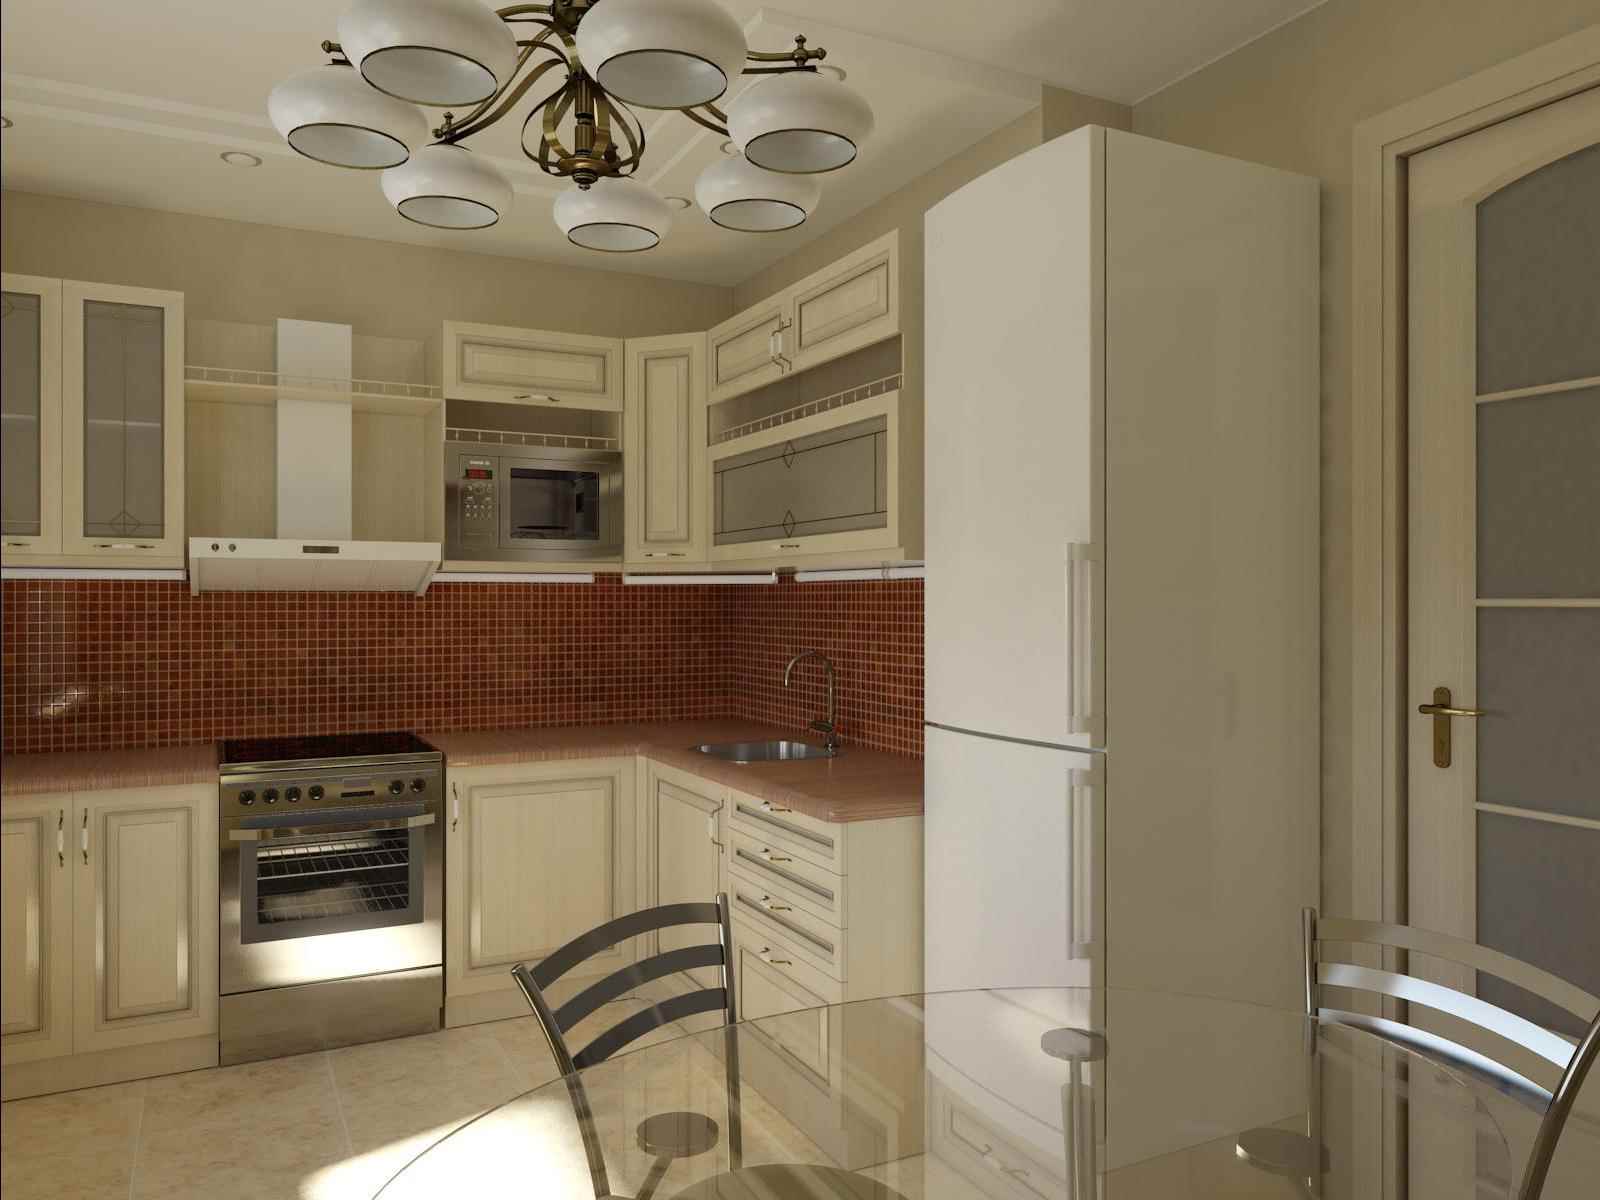 مثال على مطبخ مشرق الداخلية من 12 متر مربع